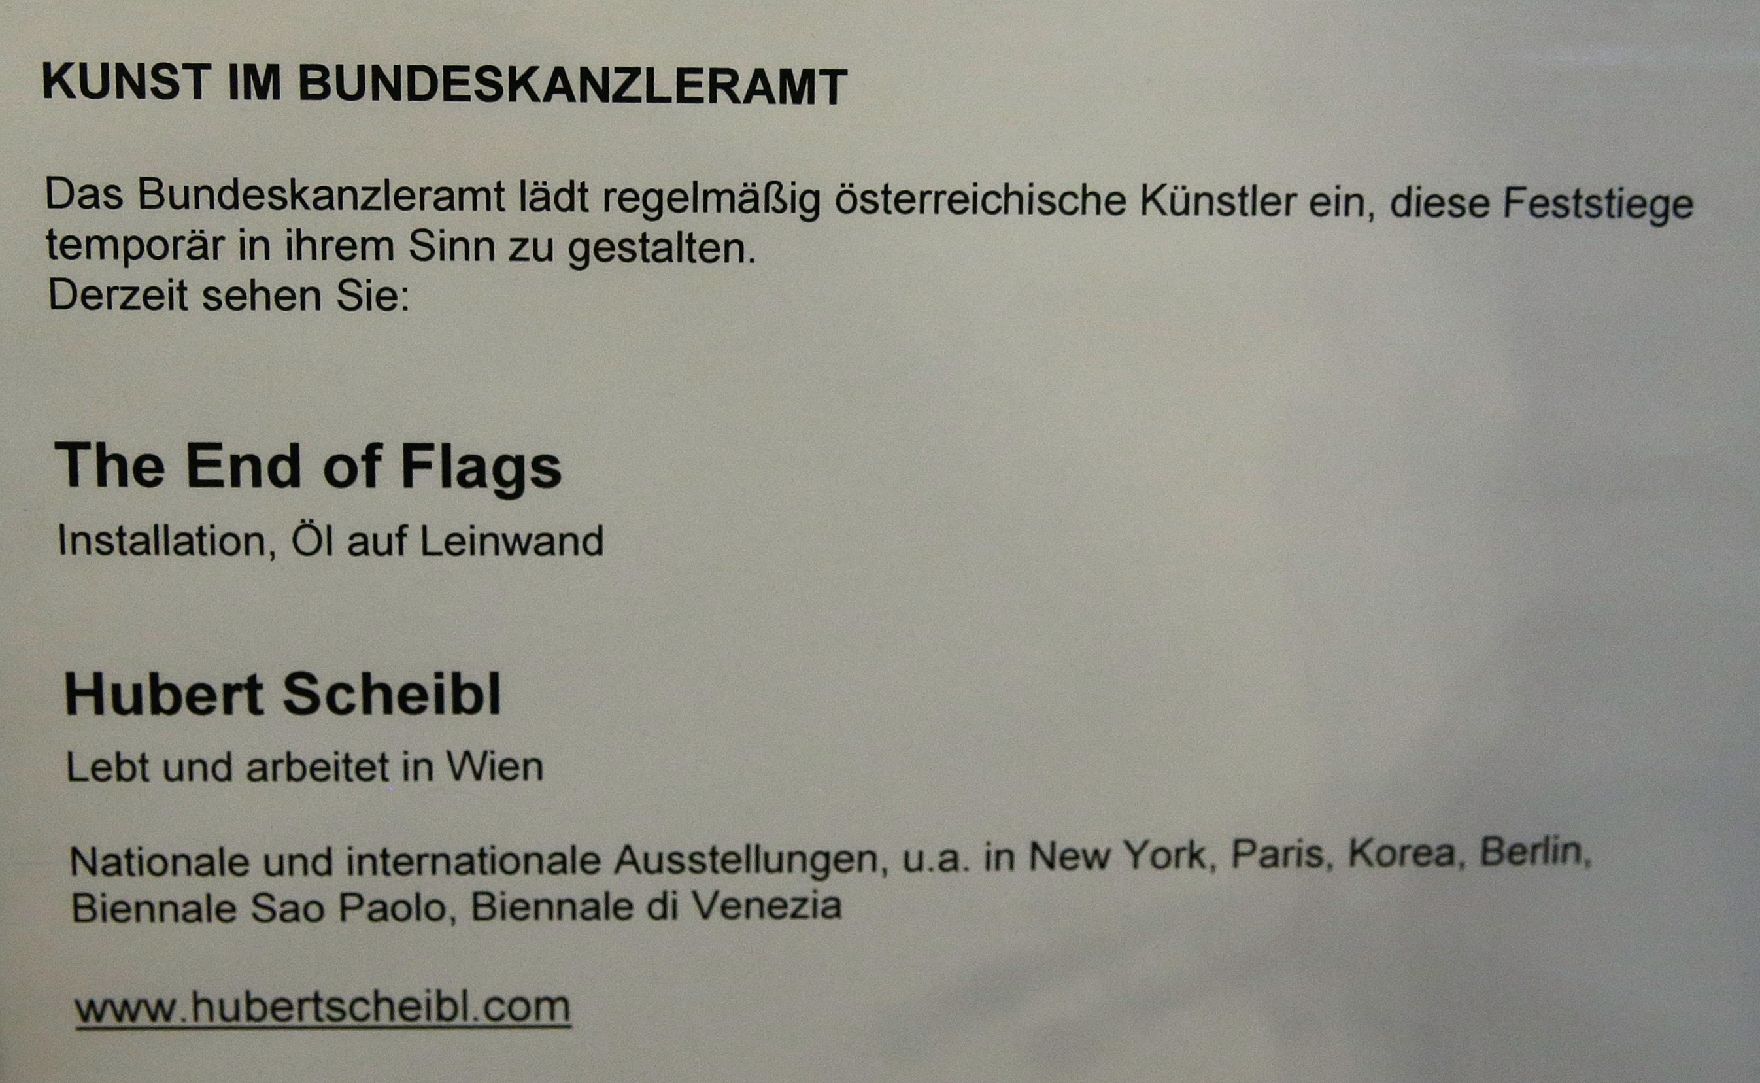 Infotafel zu dem Werk "The End of Flags" von Hubert Scheibl derzeit ausgestellt auf der Feststiege im Bundeskanzleramt.